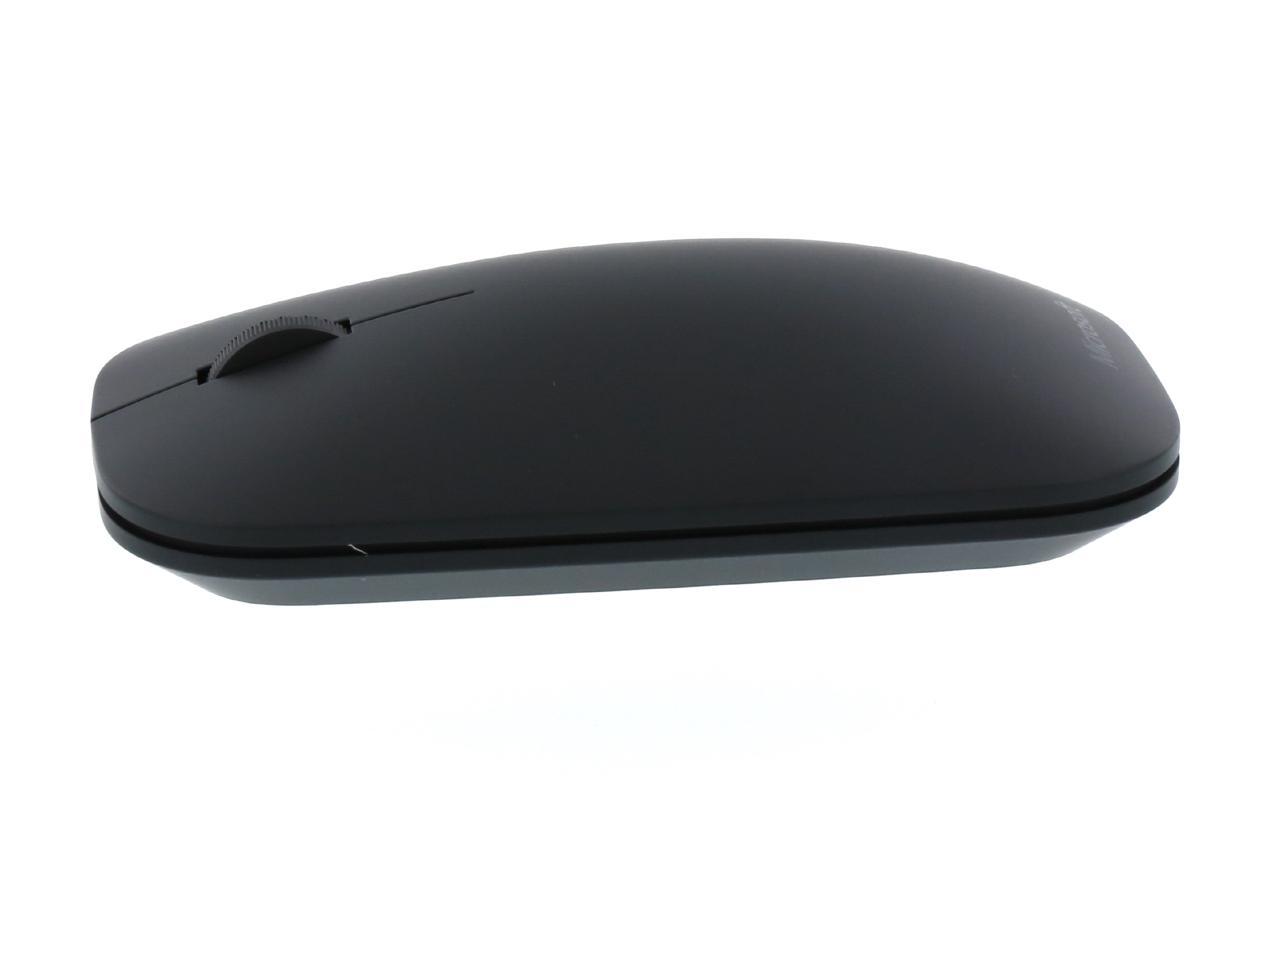 Microsoft Designer Bluetooth Mouse 7N5-00001 - Black - Newegg.com